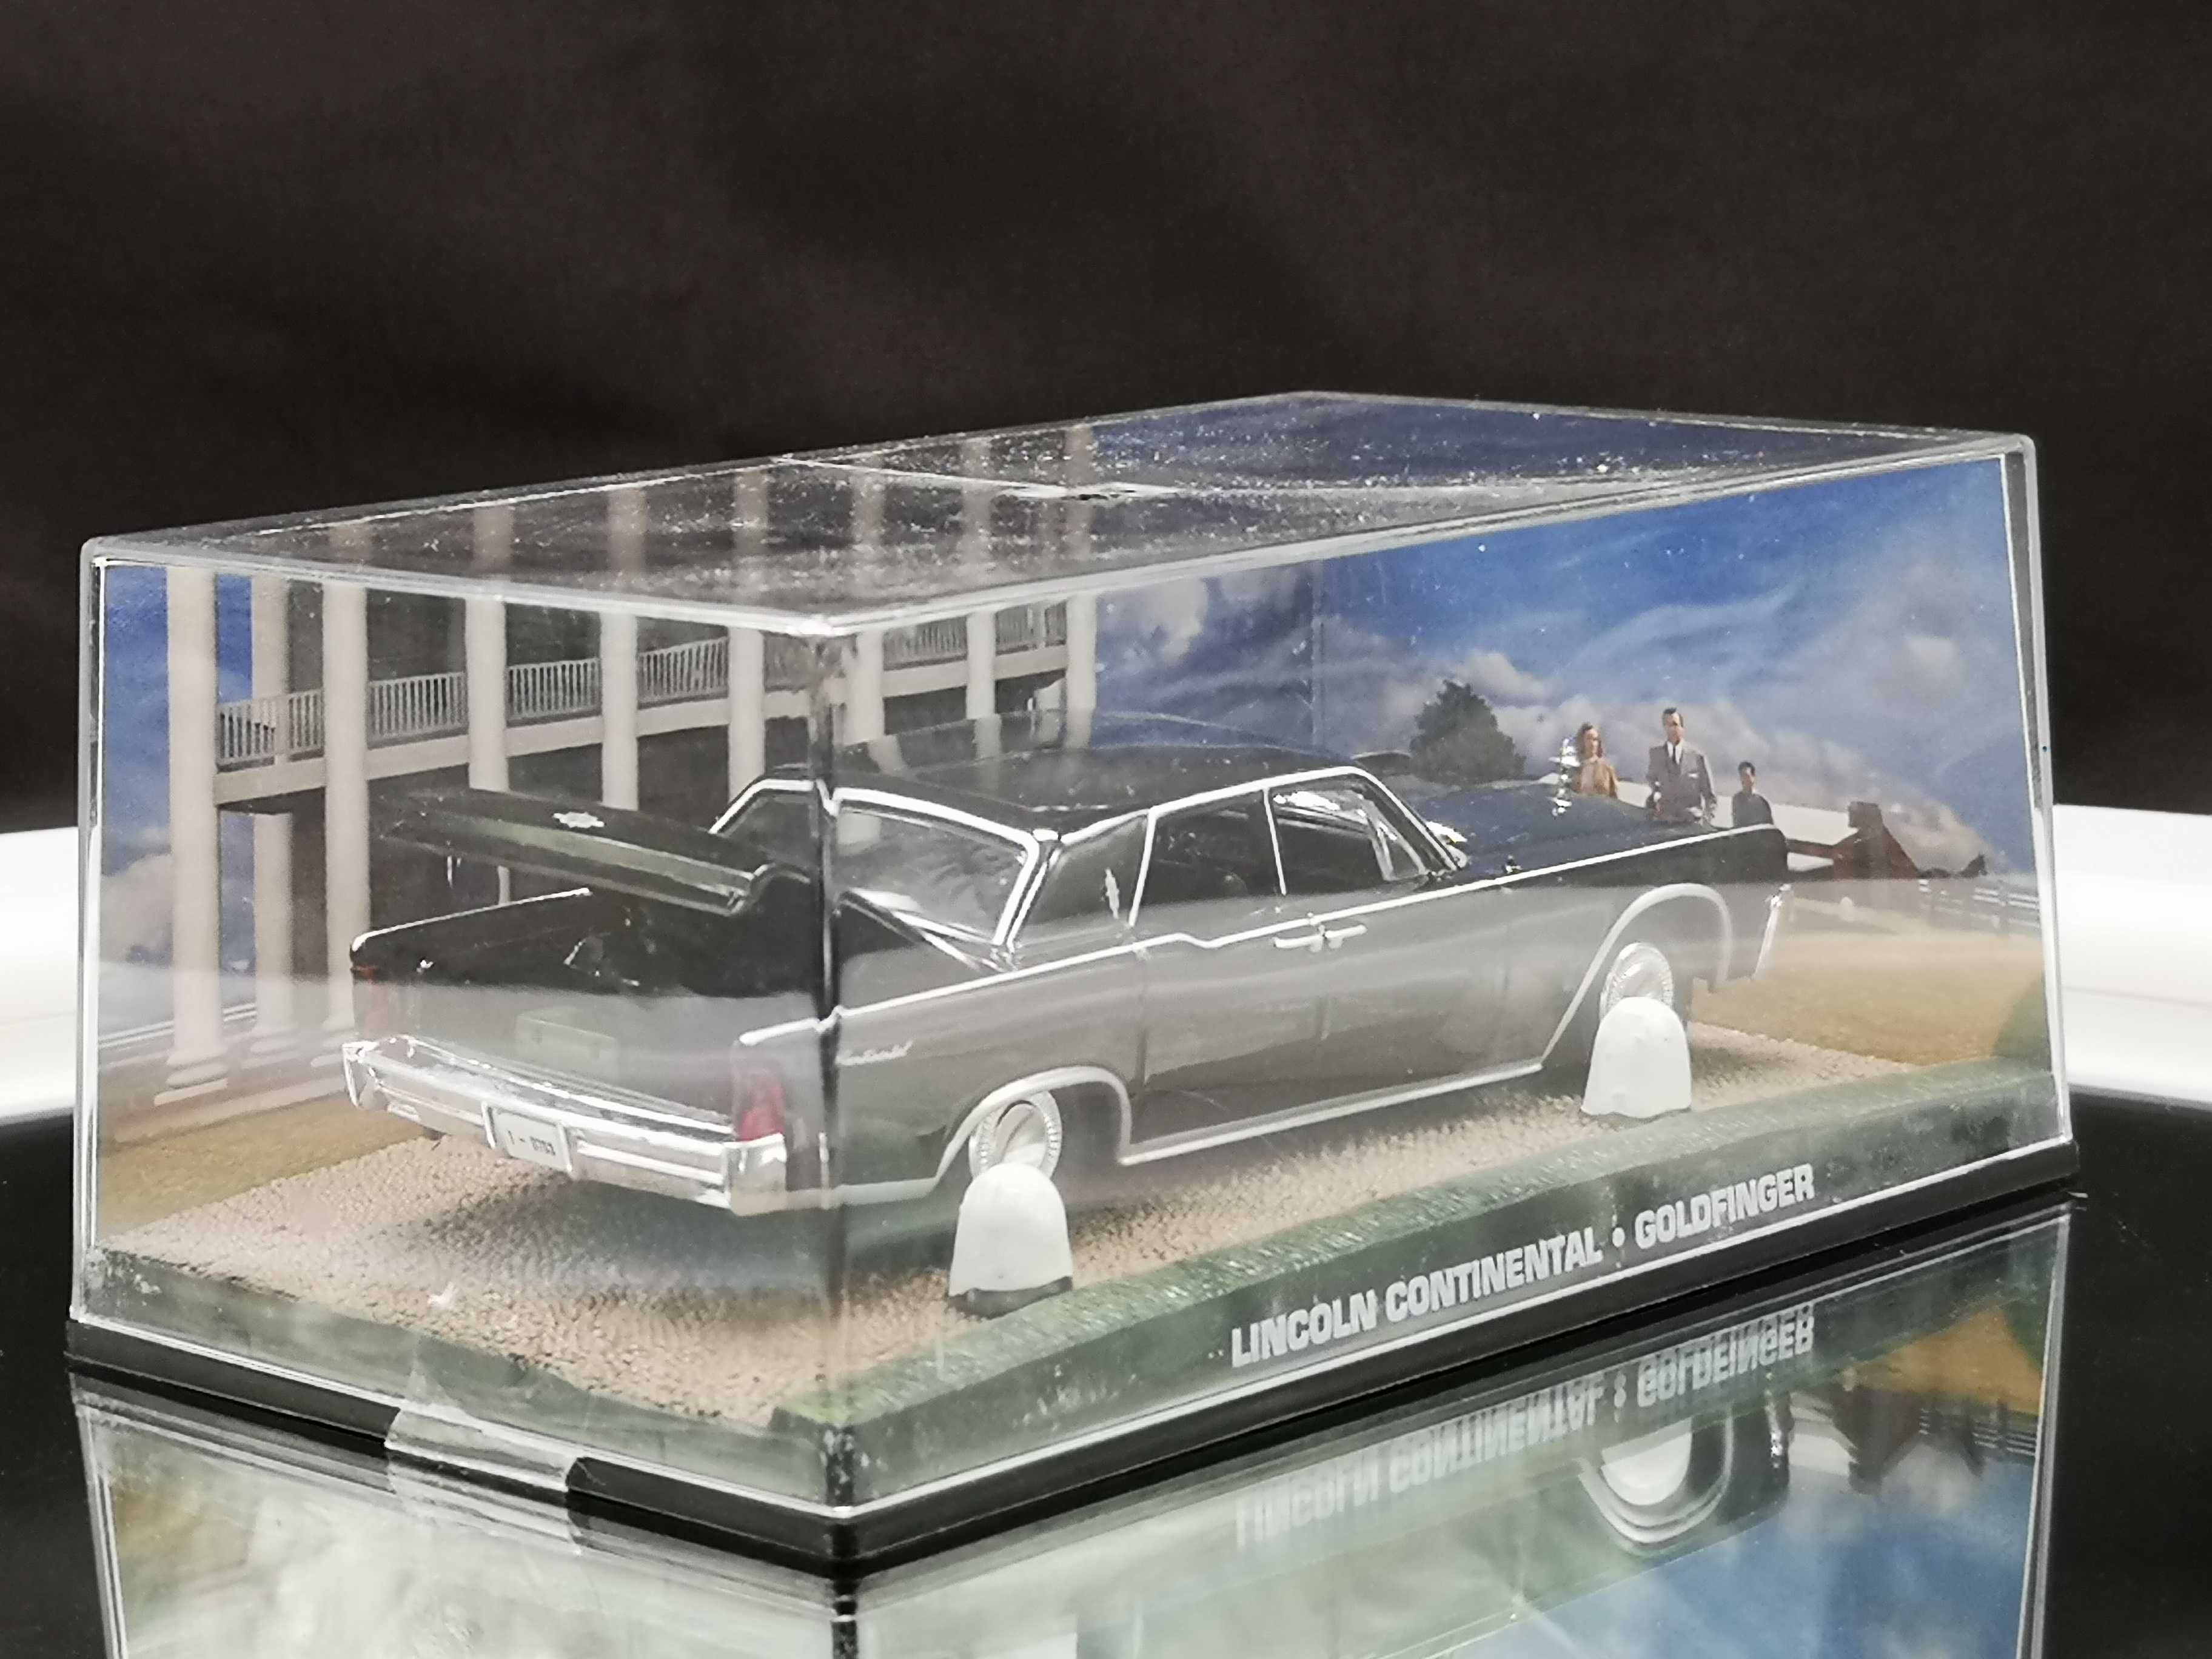 Lindo Diorama Lincoln Continental "Goldfinger"  007  1/43 da Fabbri